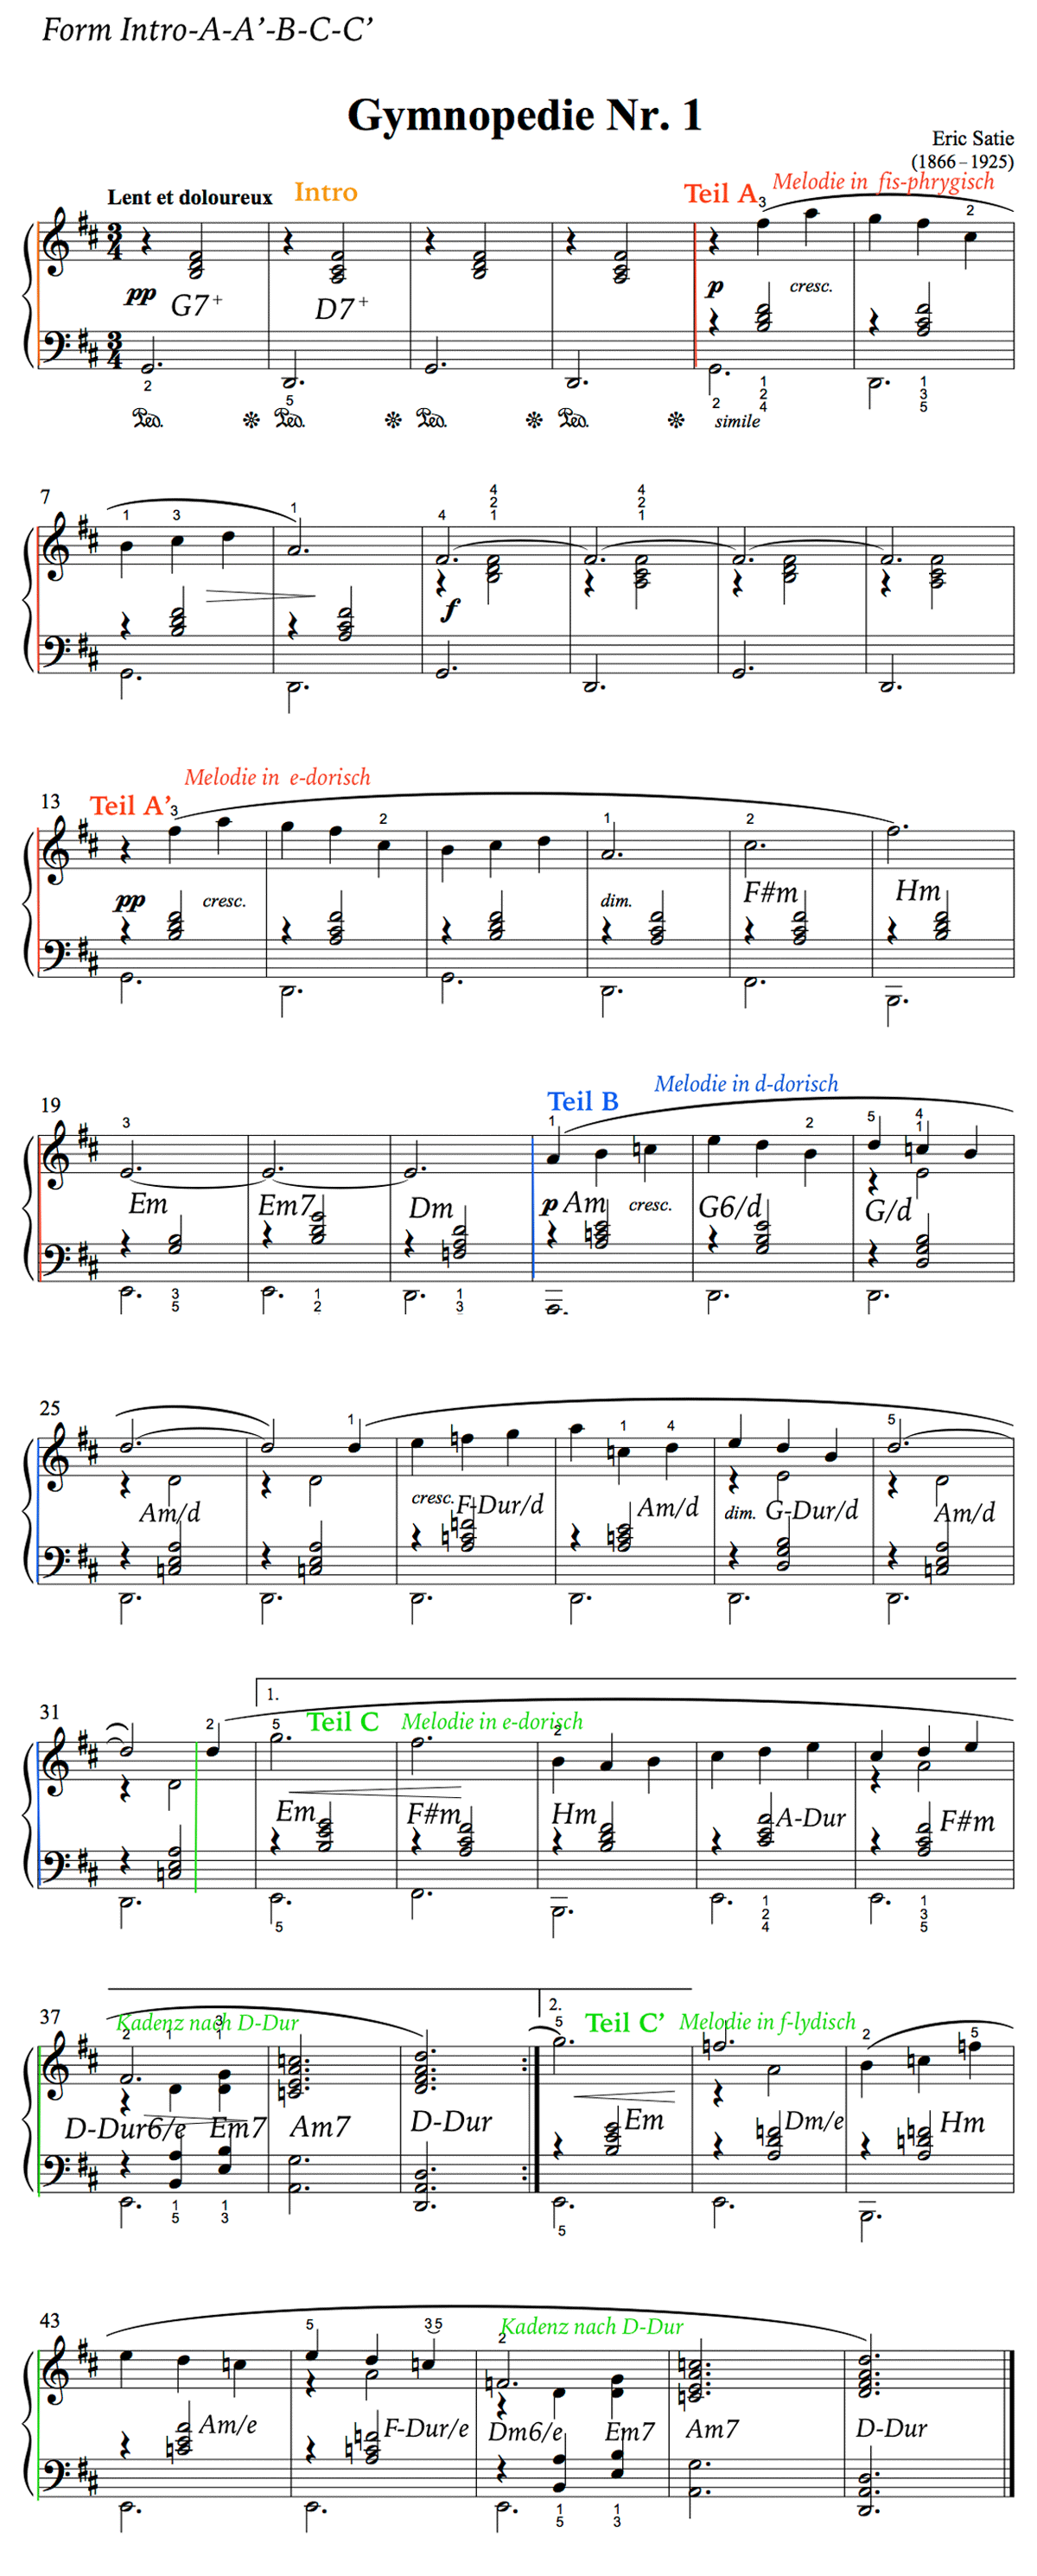 Form und Harmonie - Eric Satie: Gymnopedie Nr. 1